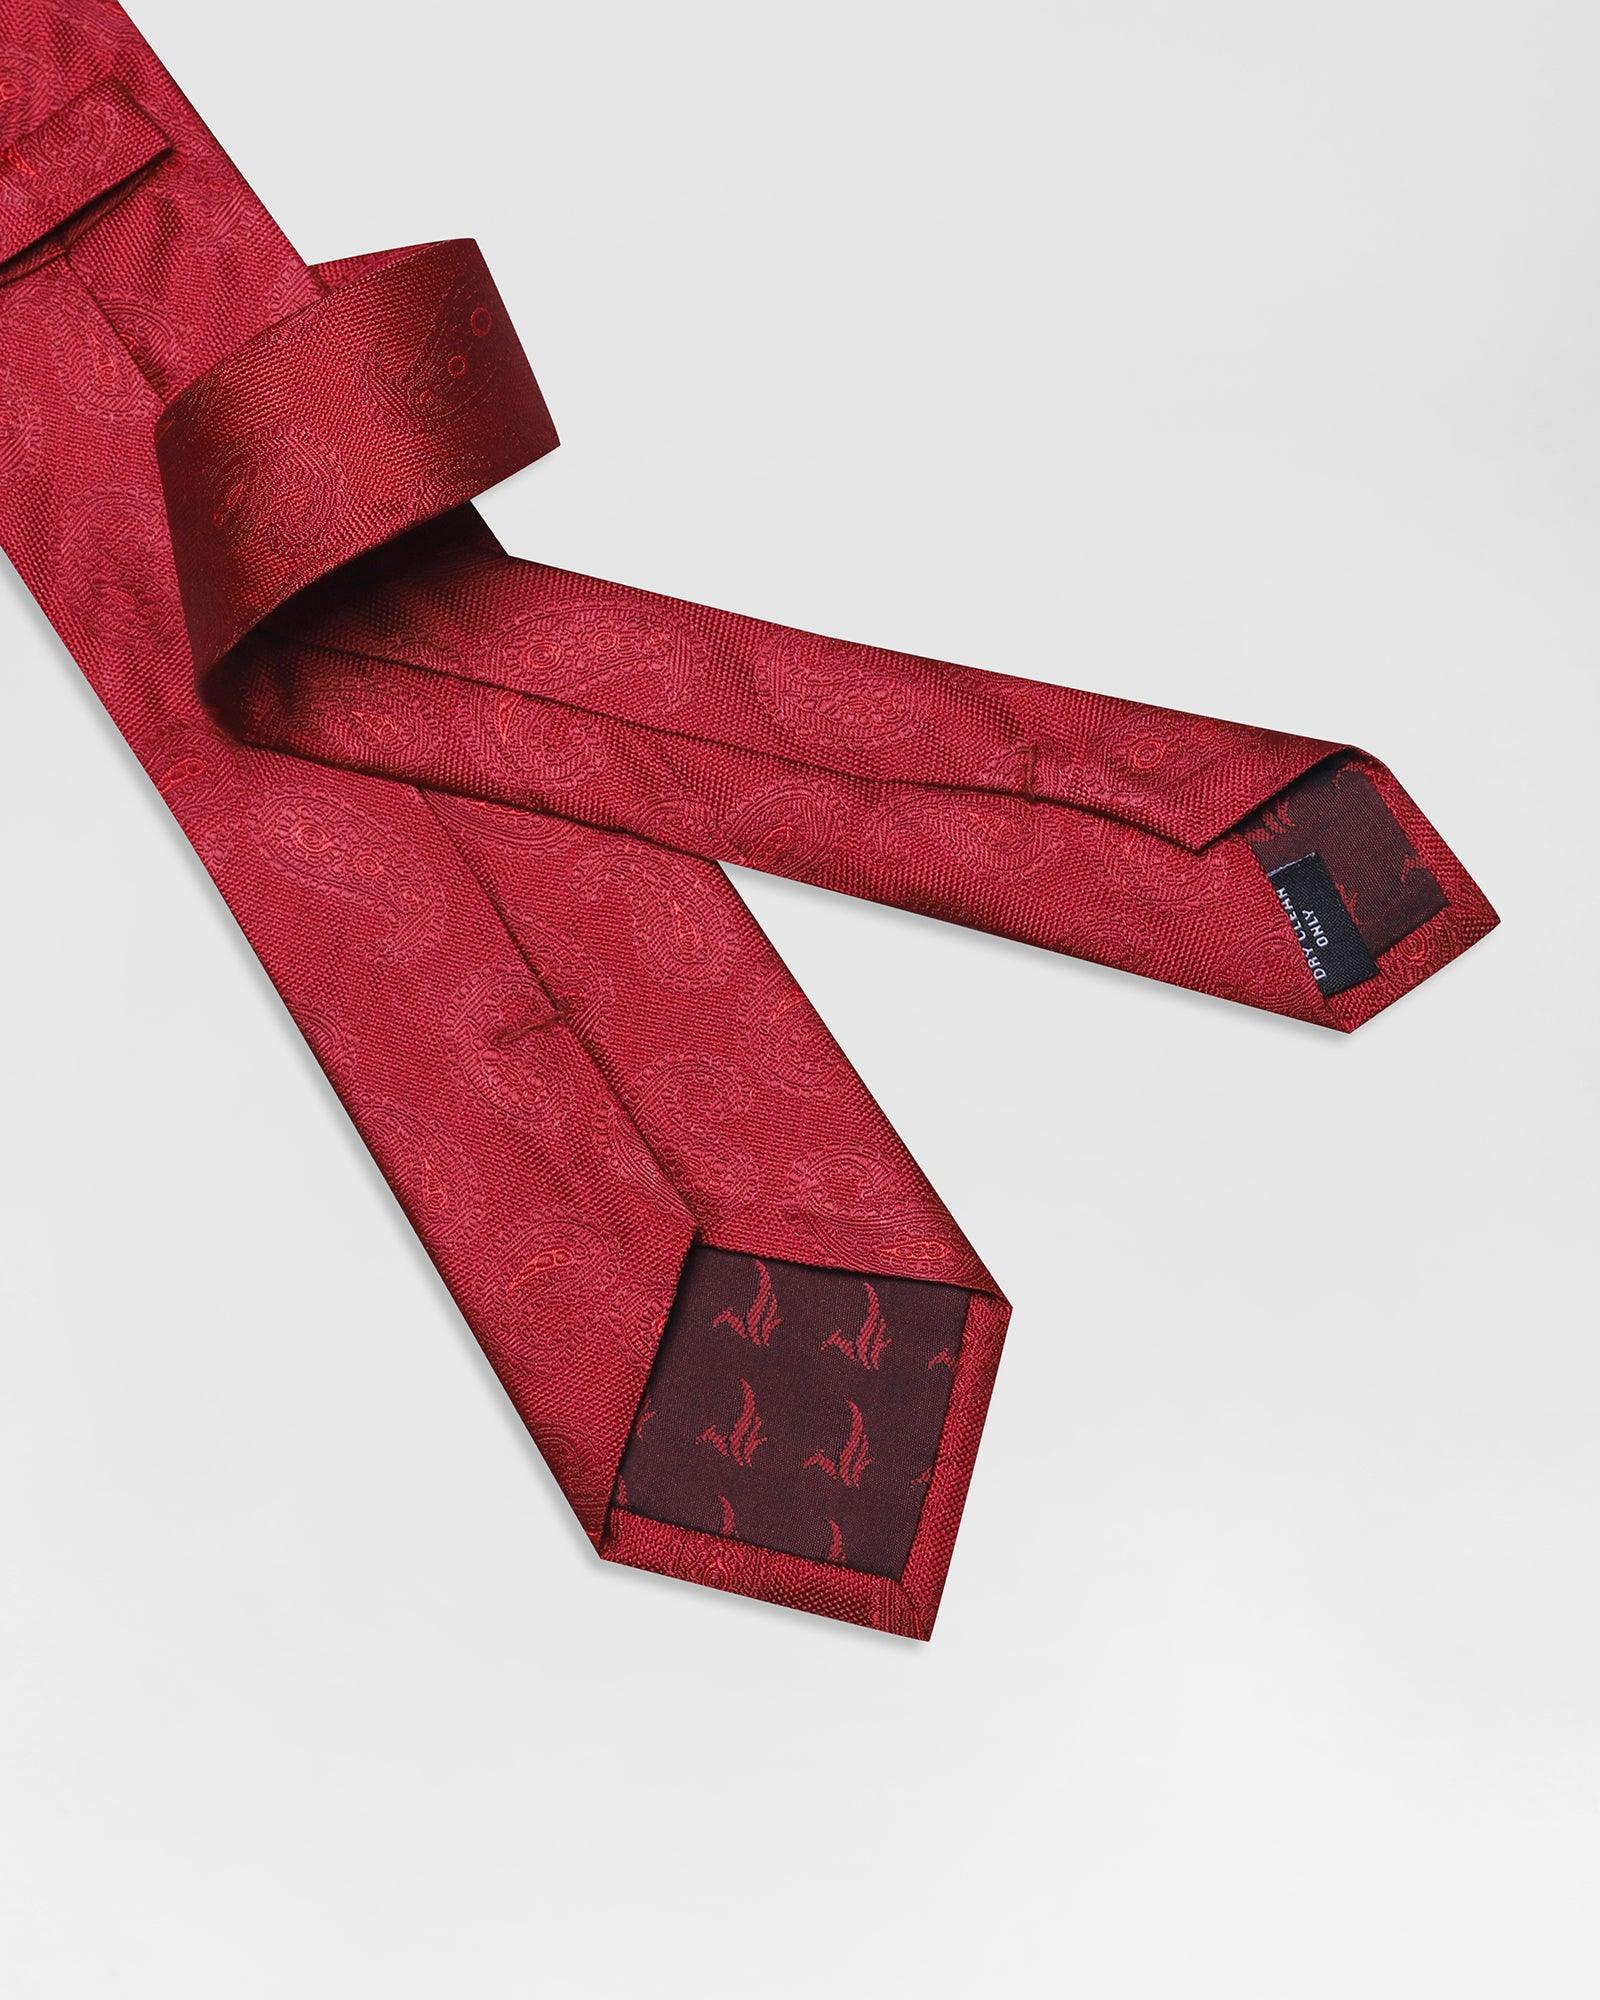 Silk Red Printed Tie - Rinaldo